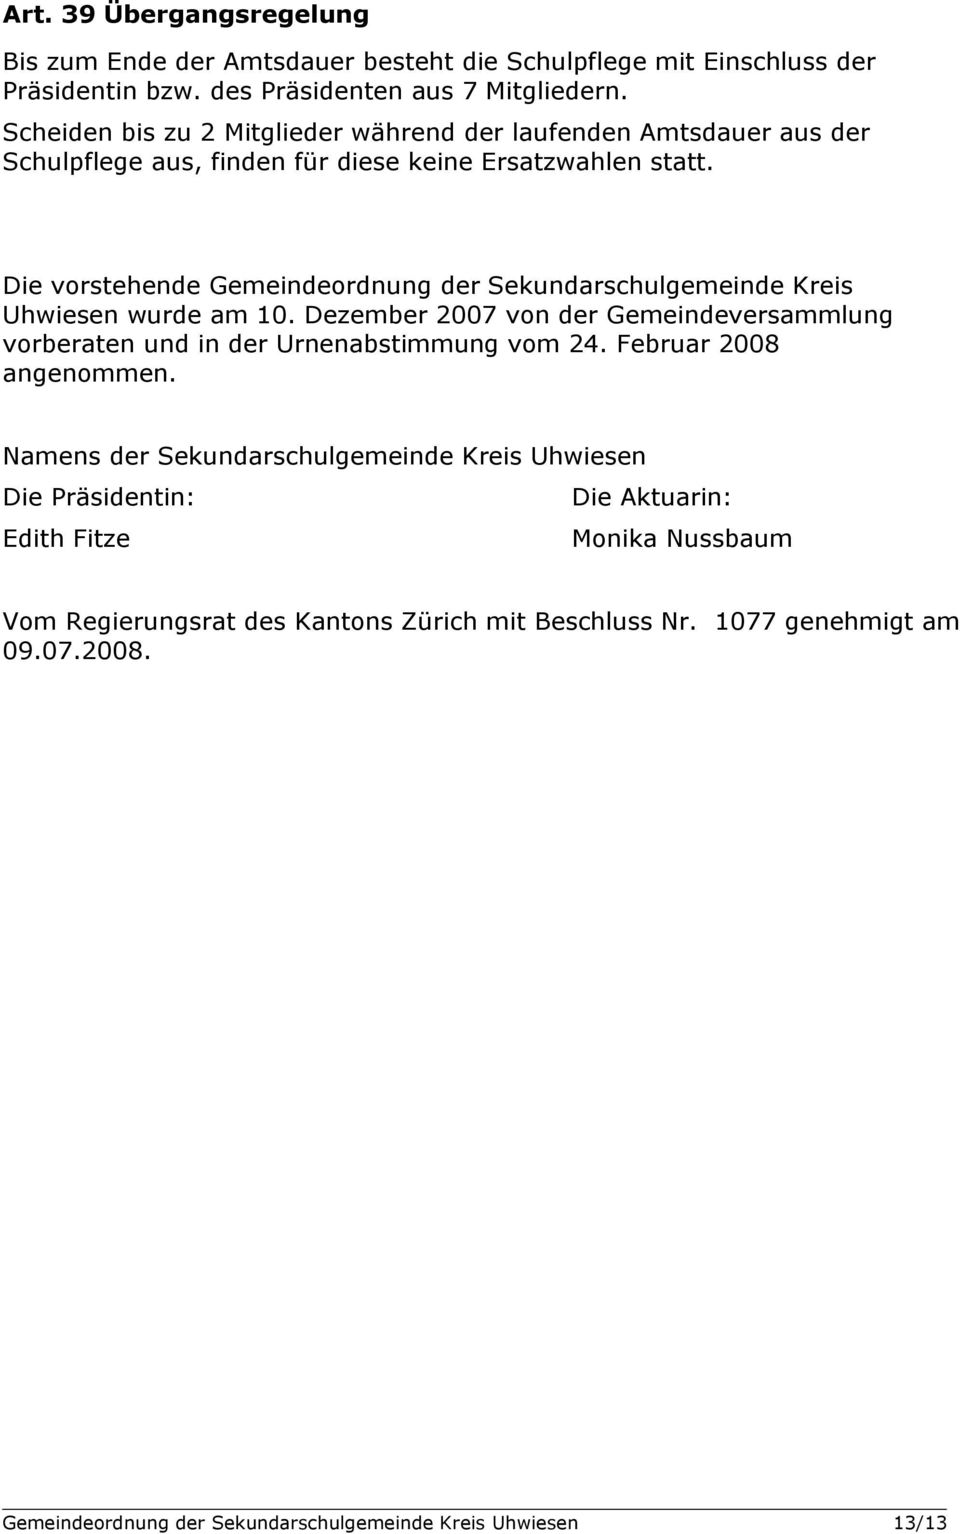 Die vorstehende Gemeindeordnung der Sekundarschulgemeinde Kreis Uhwiesen wurde am 10. Dezember 2007 von der Gemeindeversammlung vorberaten und in der Urnenabstimmung vom 24.